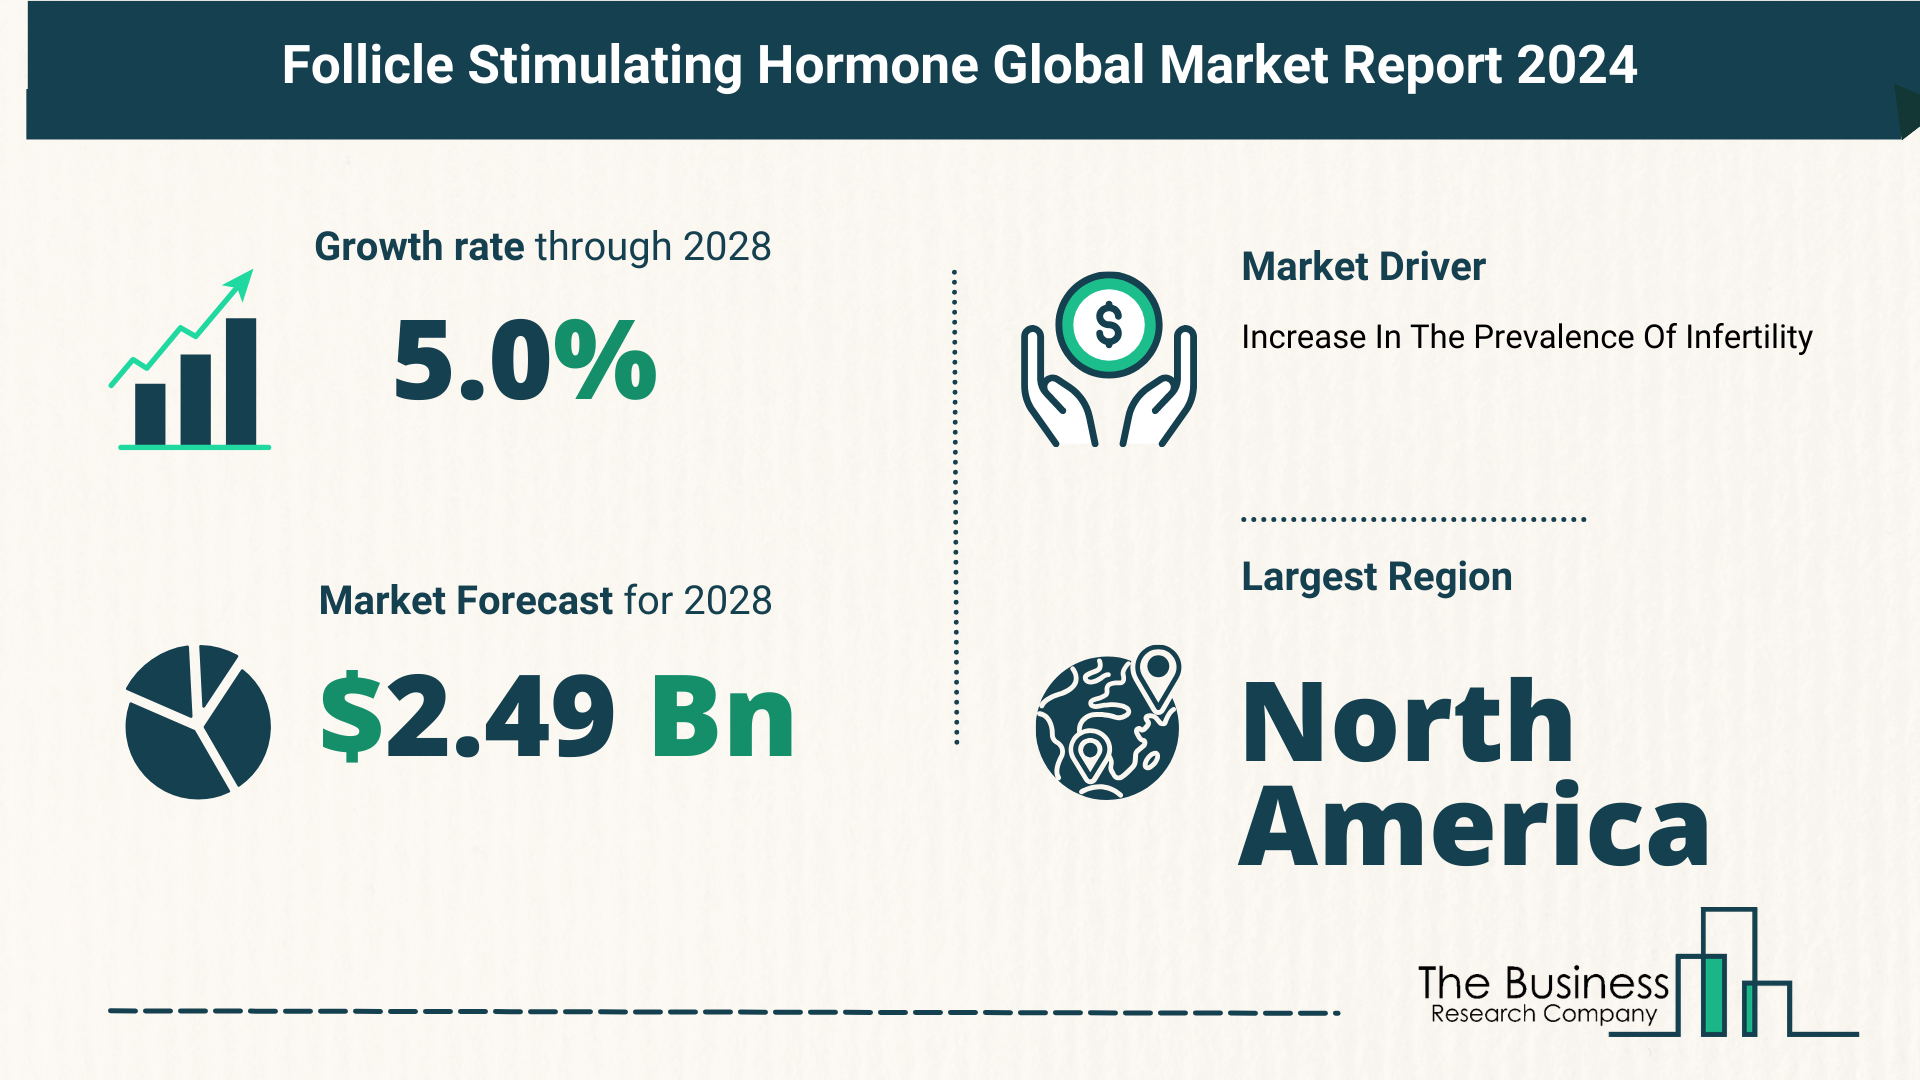 Global Follicle Stimulating Hormone Market